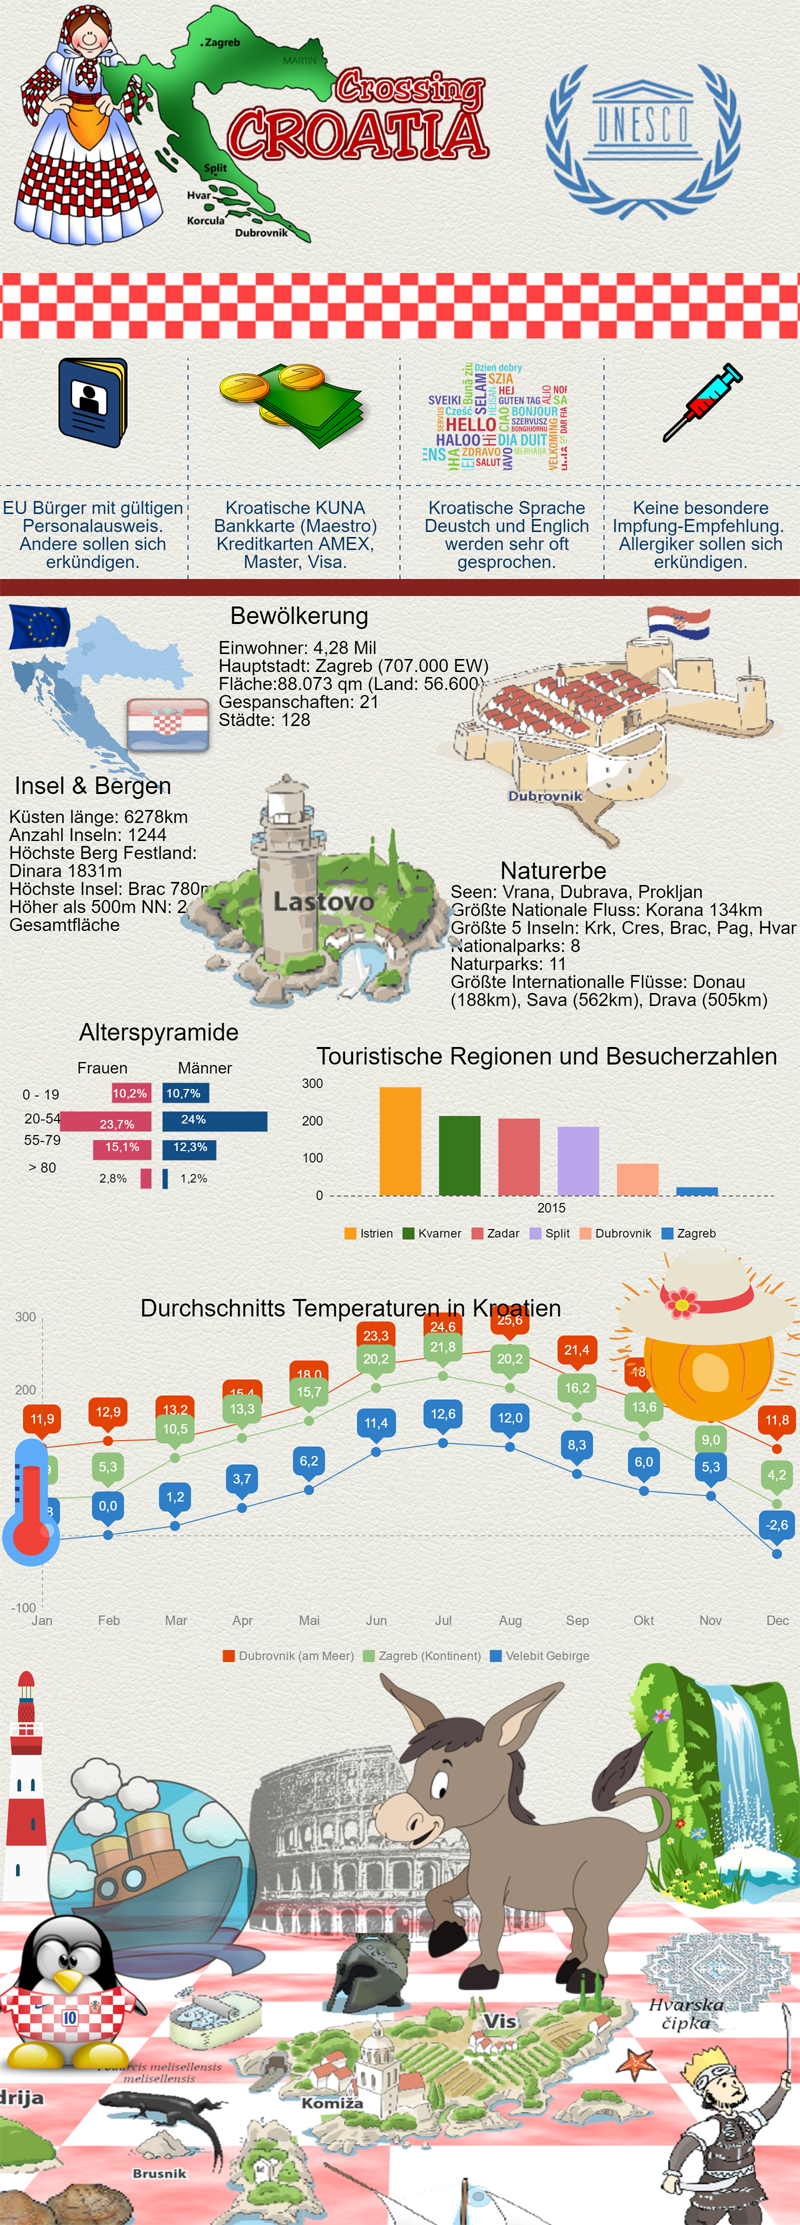 Kroatien info in Zahlen, vom Hauptstadt über Einwohner bis zum Sehenswürdigkeiten - Infografik